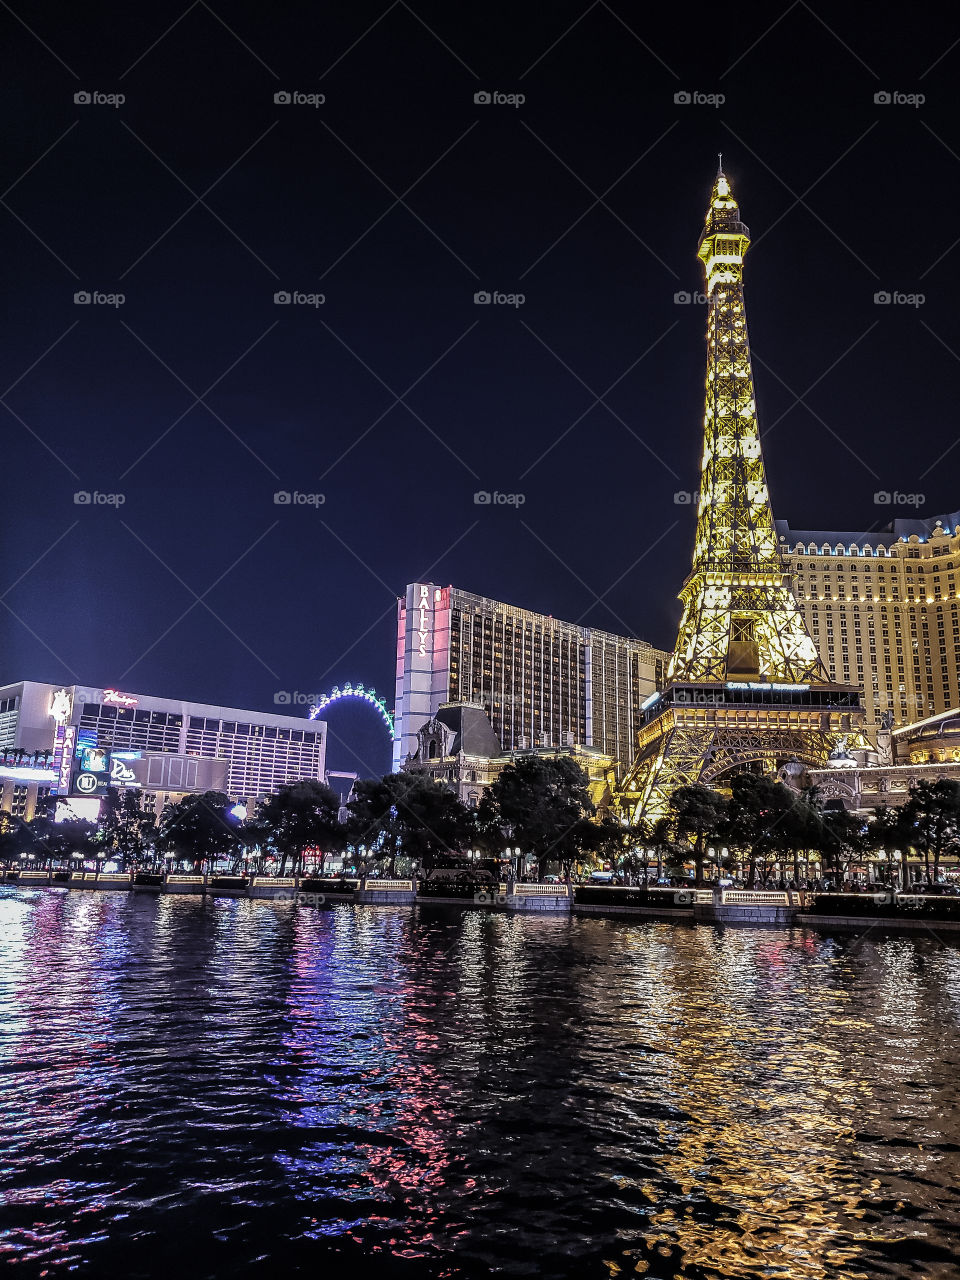 Eiffel Tower in Las Vegas!